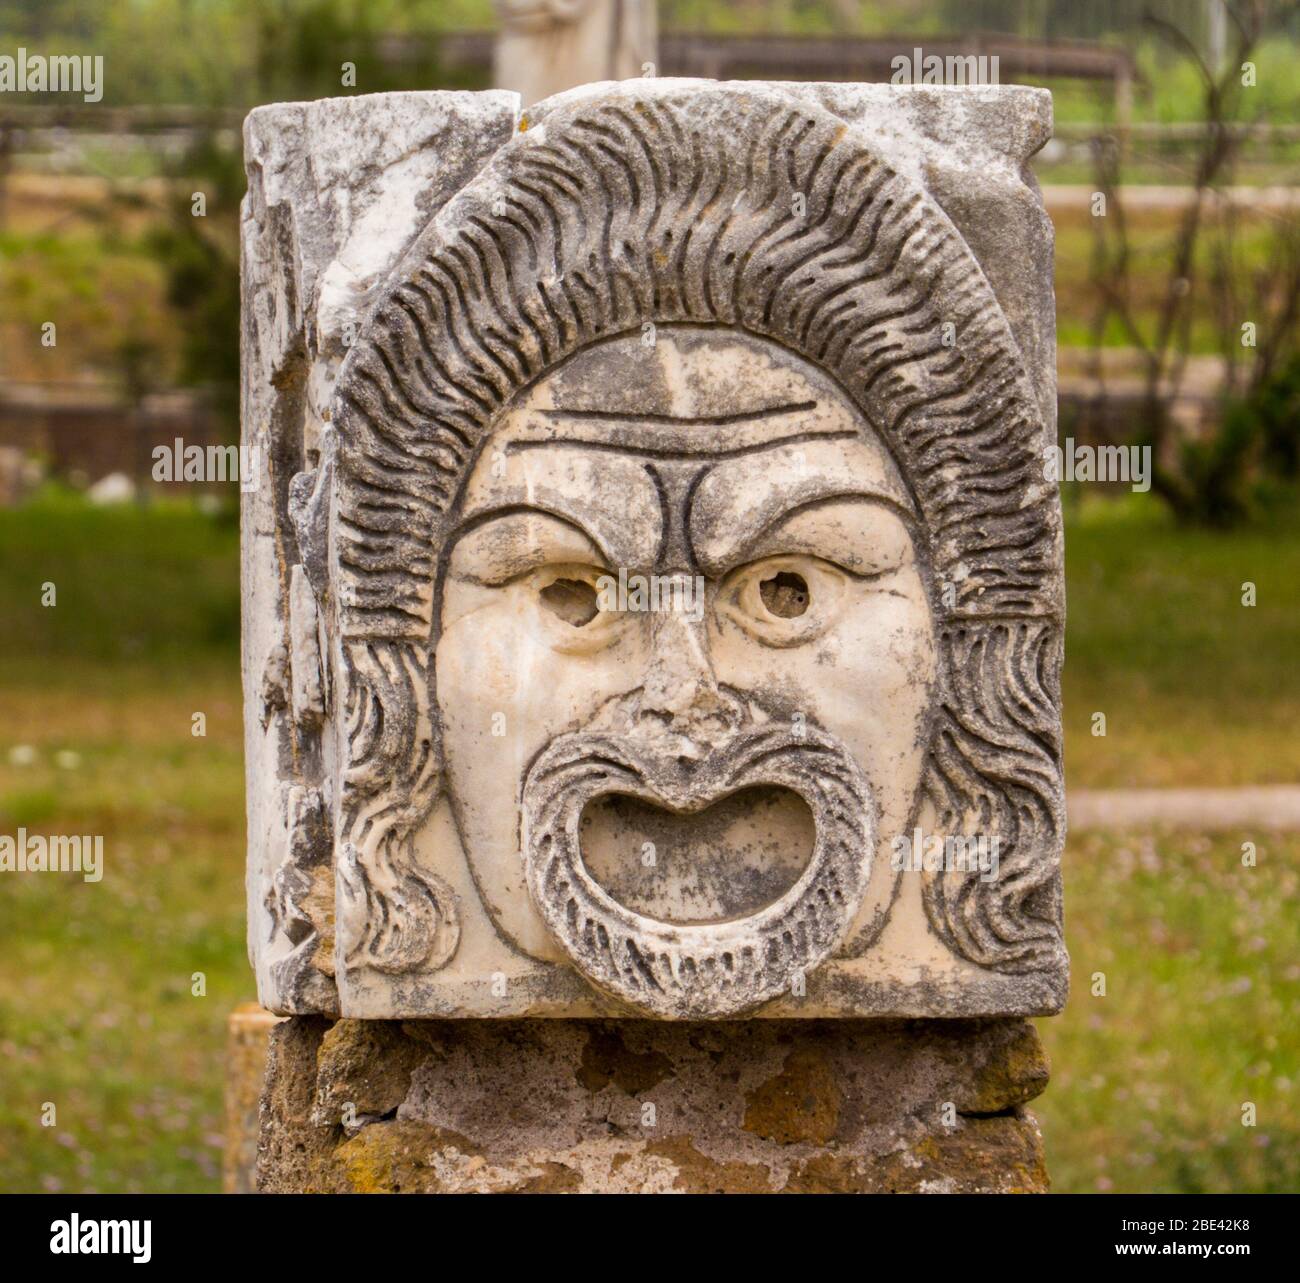 Détail du masque, Théâtre romain, site archéologique antique d'Ostia Antica à Rome, Italie Banque D'Images